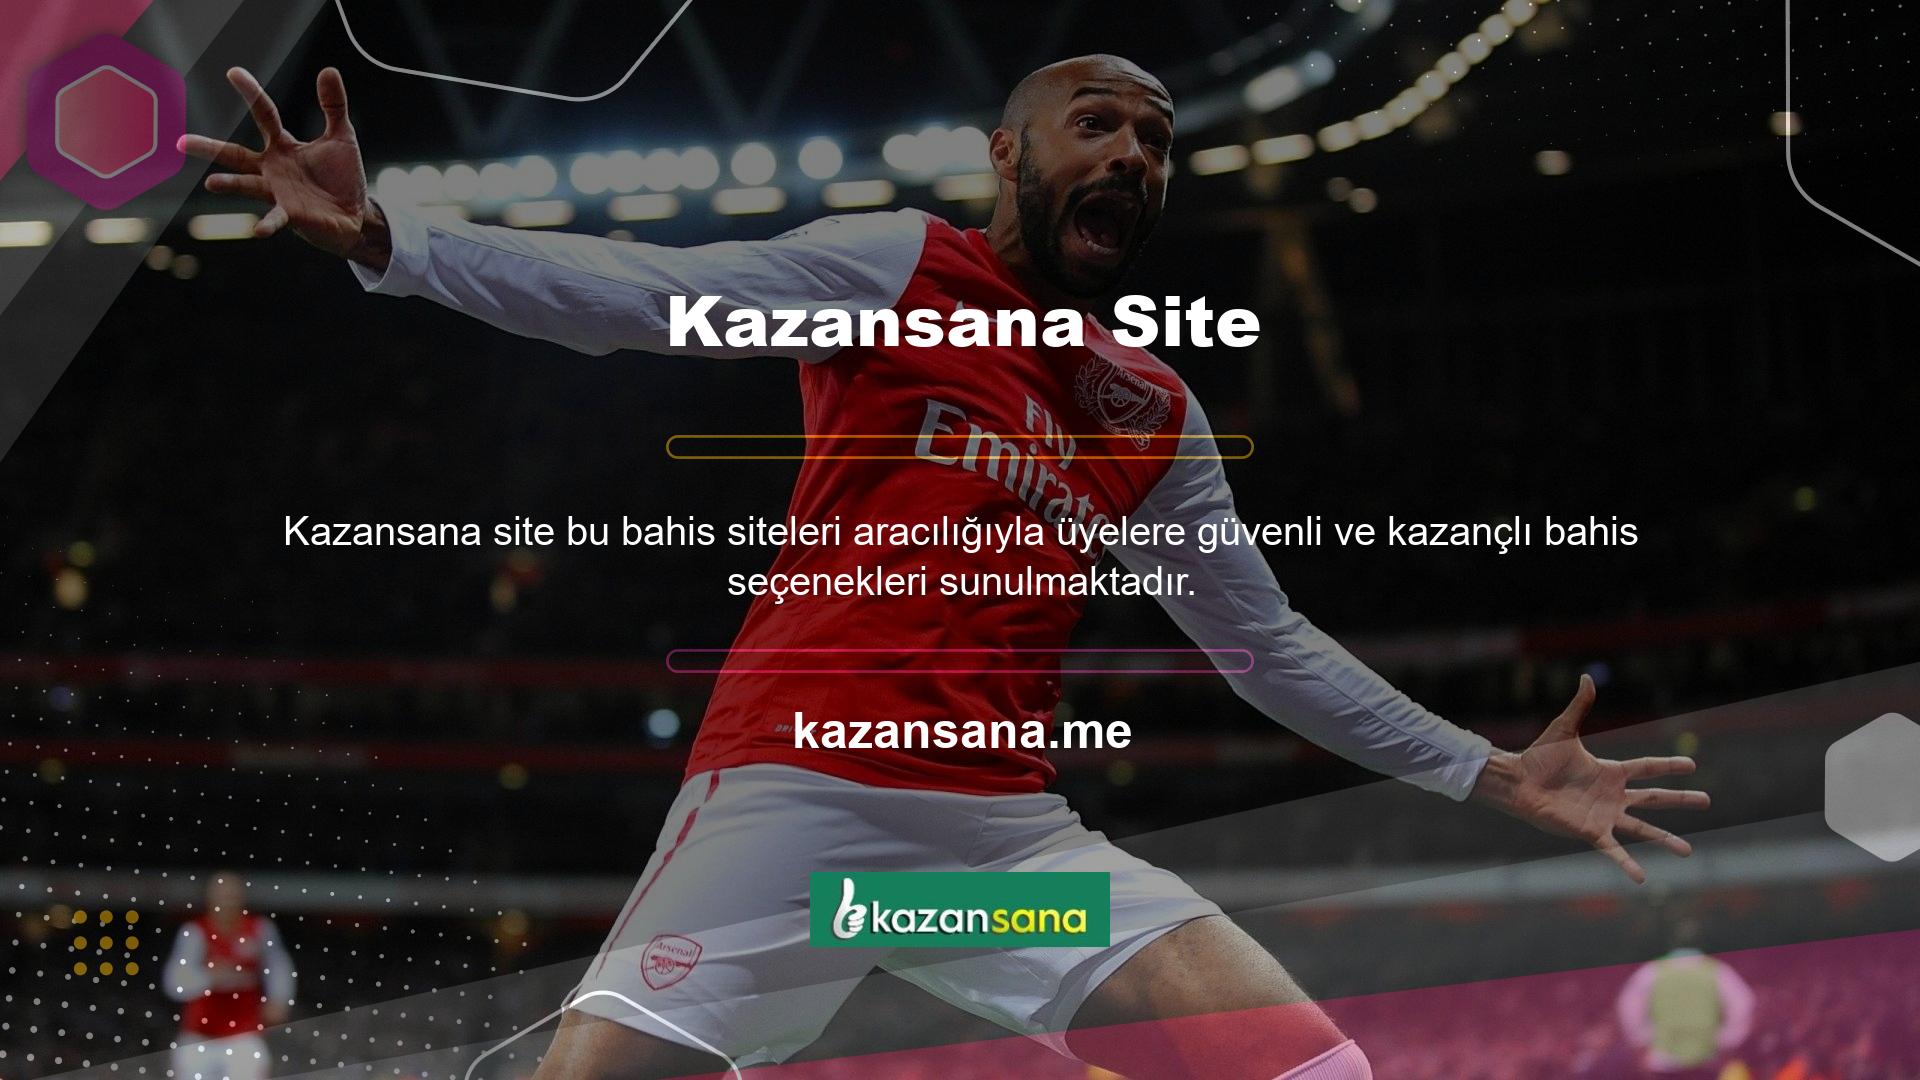 Mevcut giriş adresinde sık sık değişiklik yapılmasına rağmen Kazansana oyun sitesi, üyelerine hizmet vermek için hâlâ giriş bilgilerine güveniyor